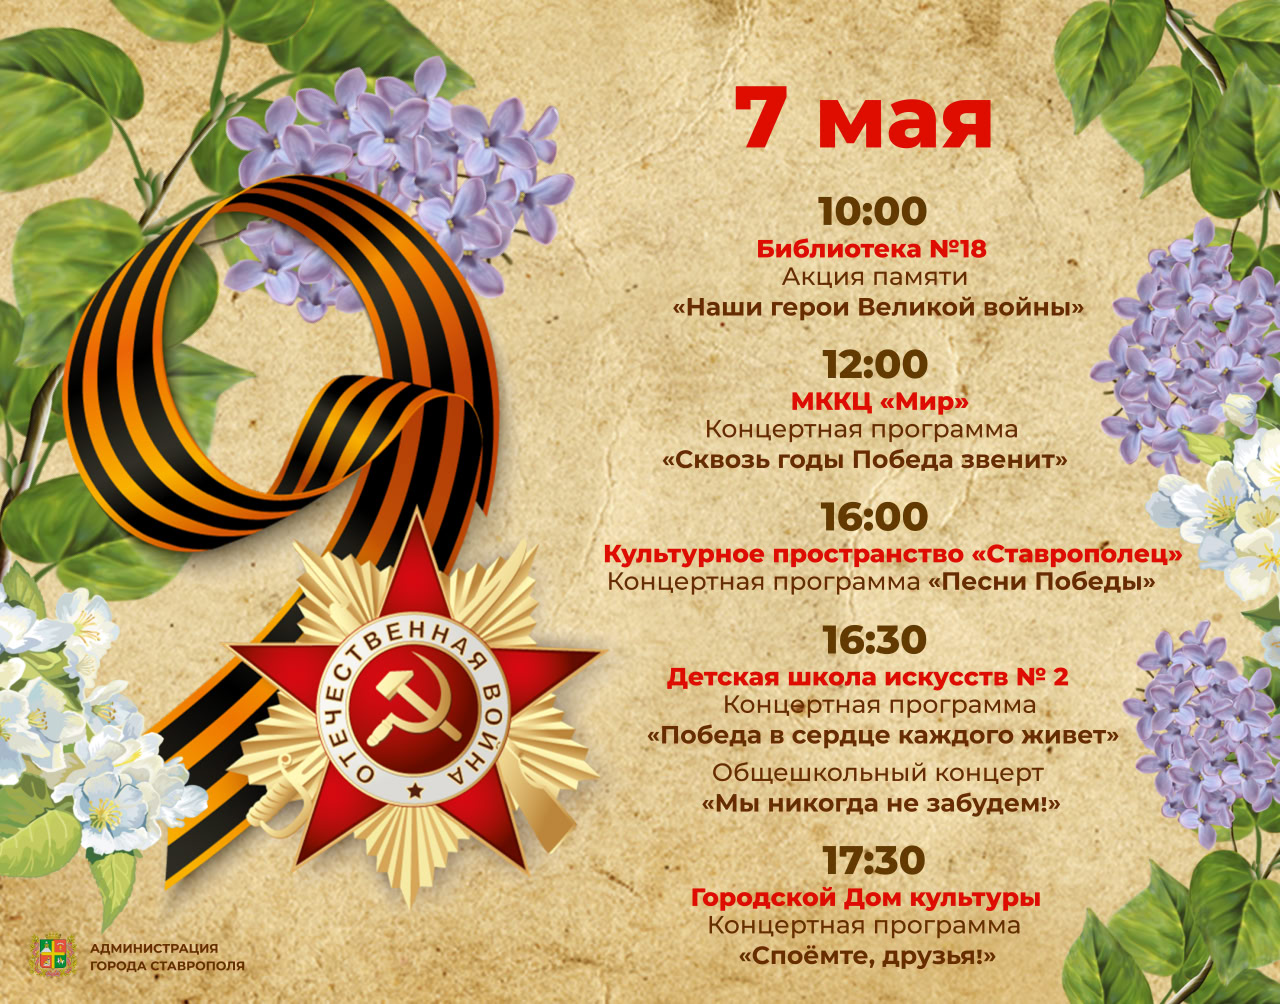 Песни военных лет, яркие выступления народных коллективов и акции памяти – в предпраздничной афише Ставрополя